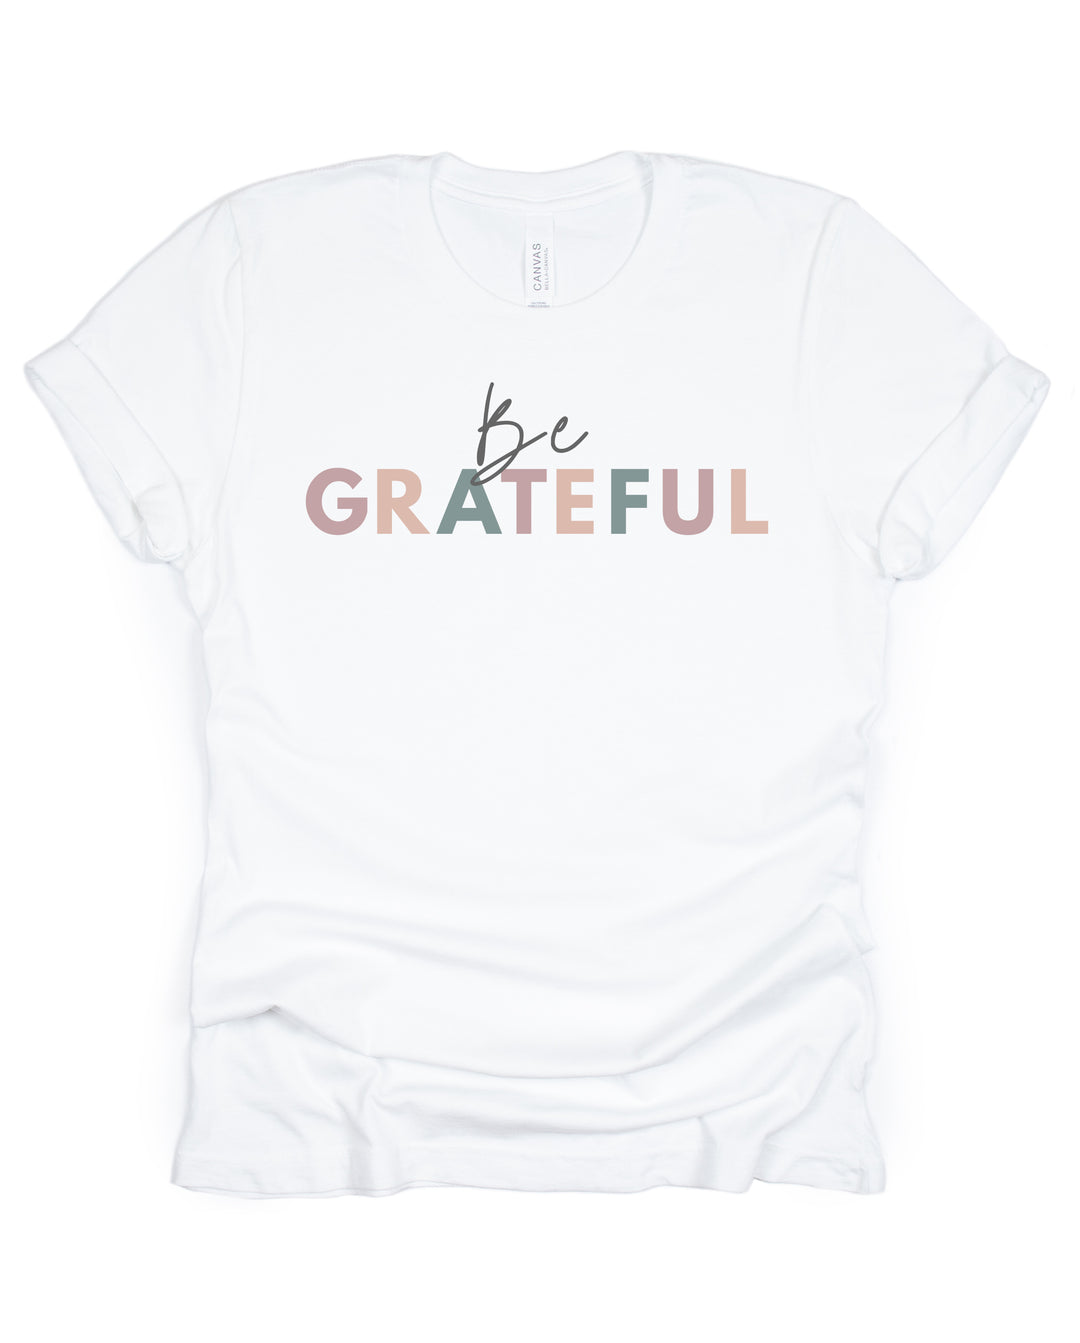 Be Grateful - Unisex Crew-Neck Tee - Joy & Country